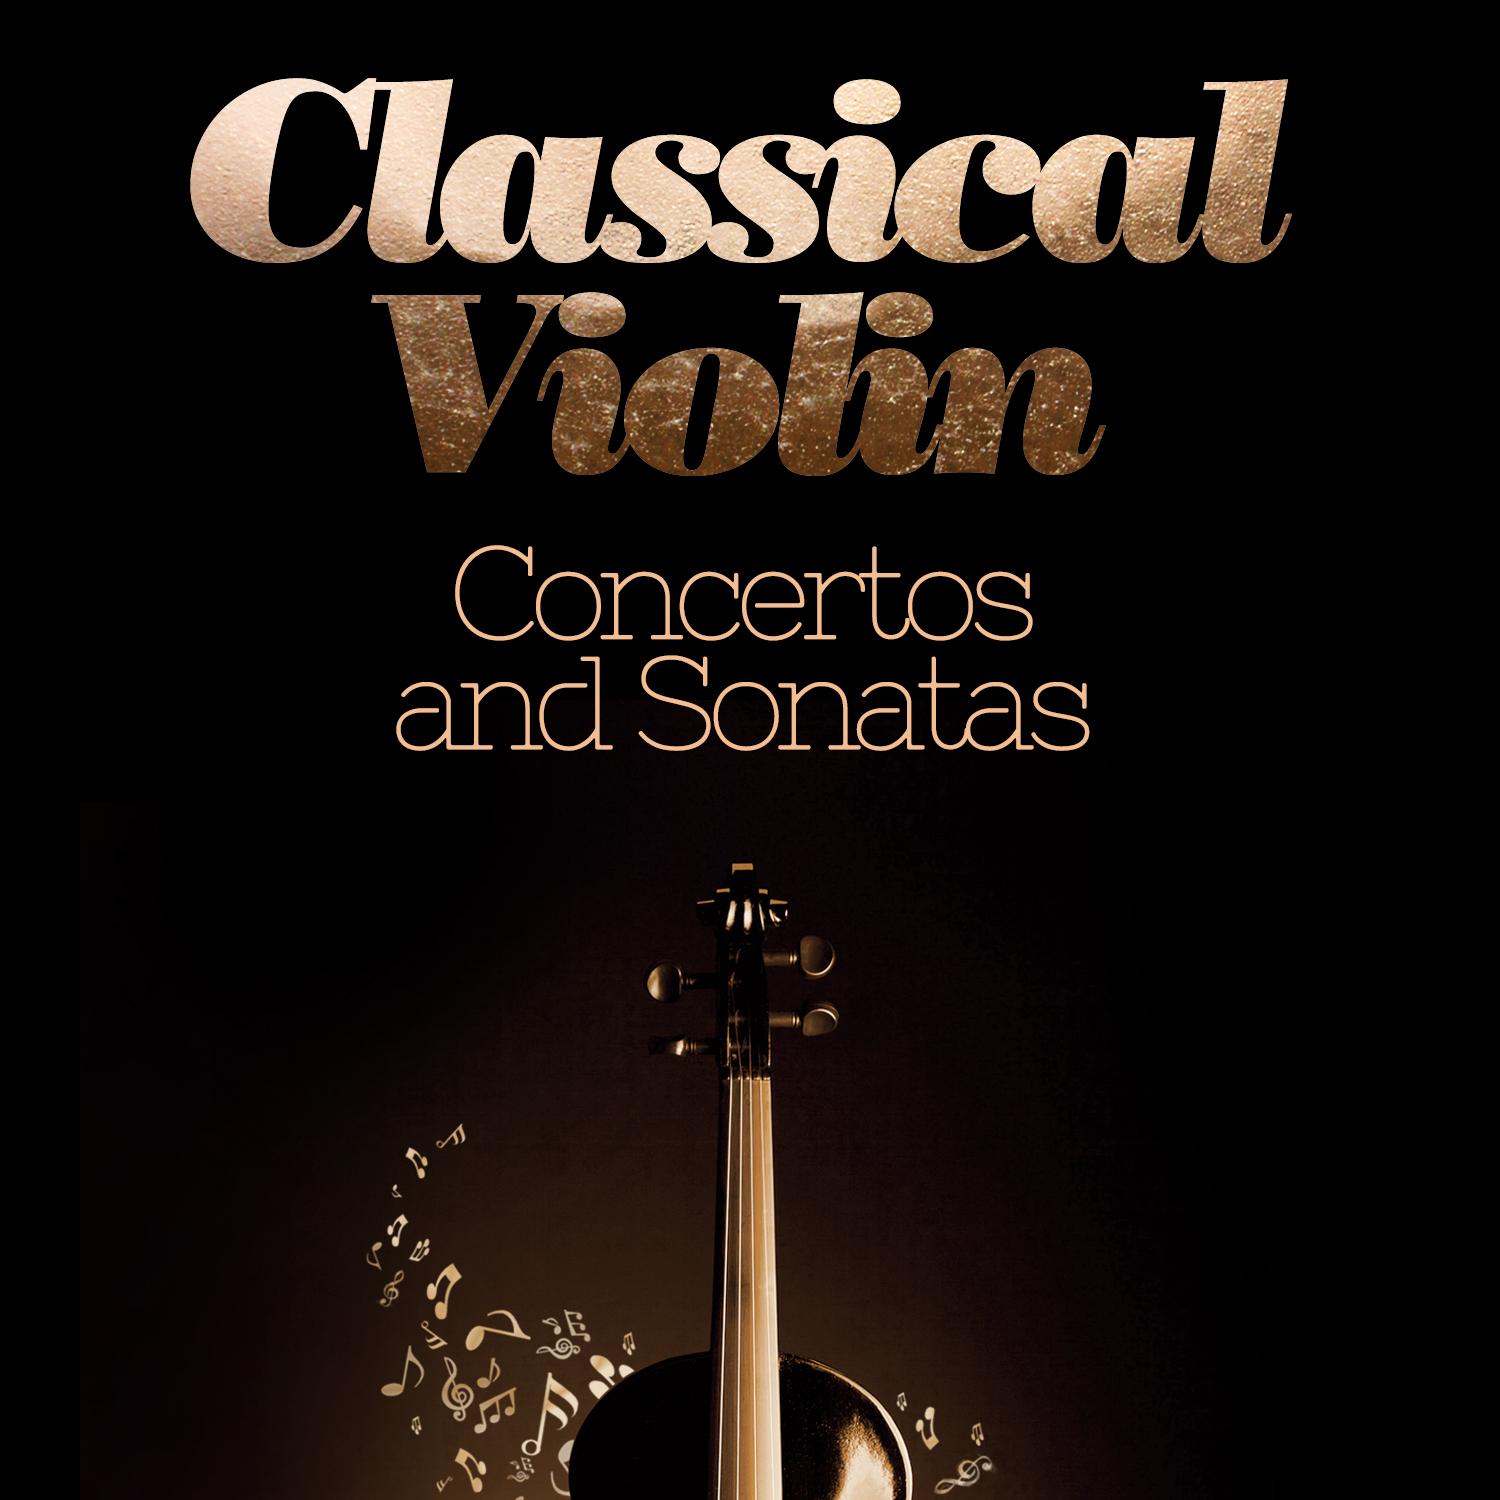 Classical Violin Concertos and Sonatas